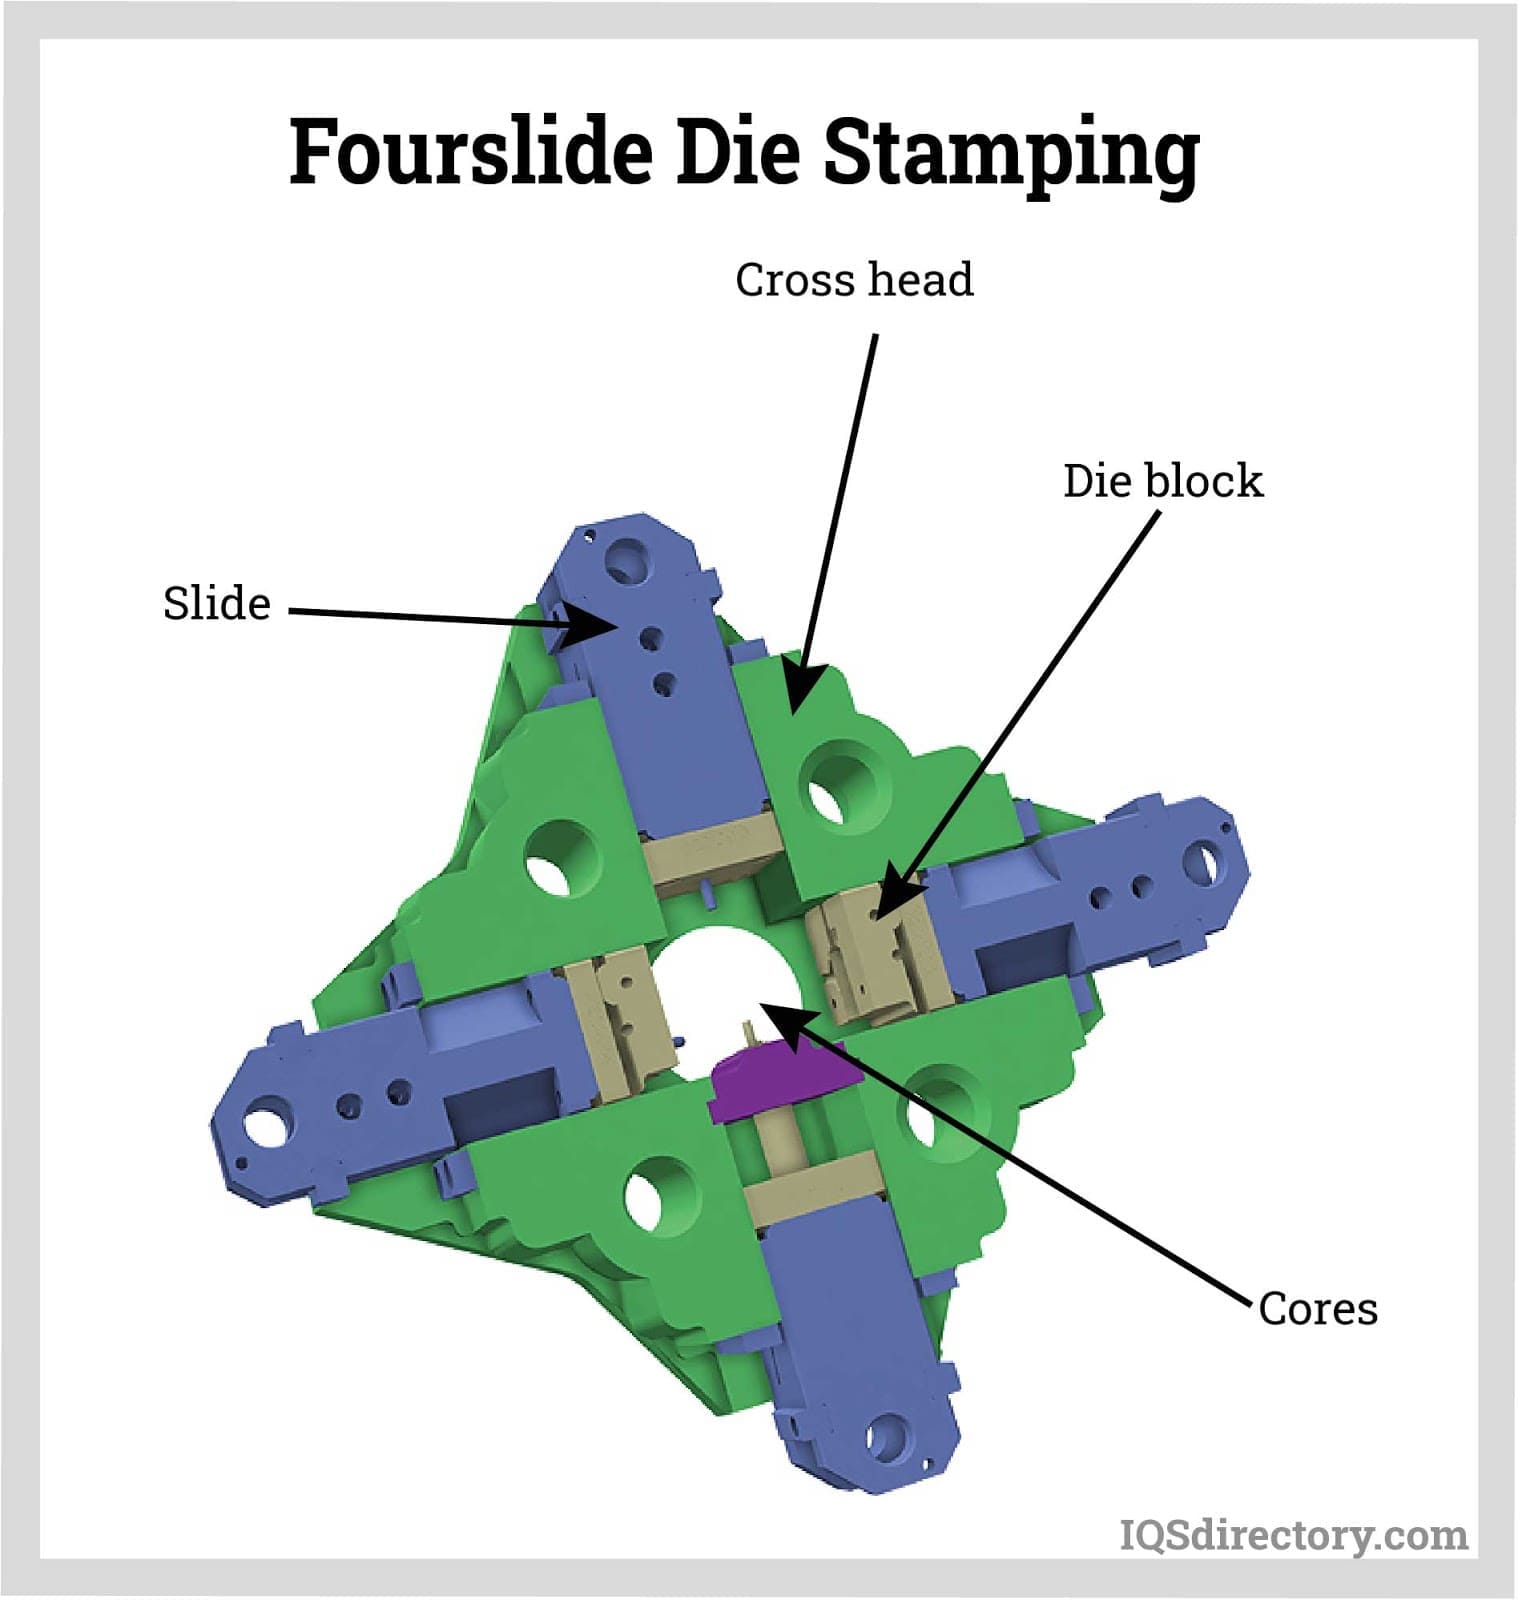 Fourslide Die Stamping